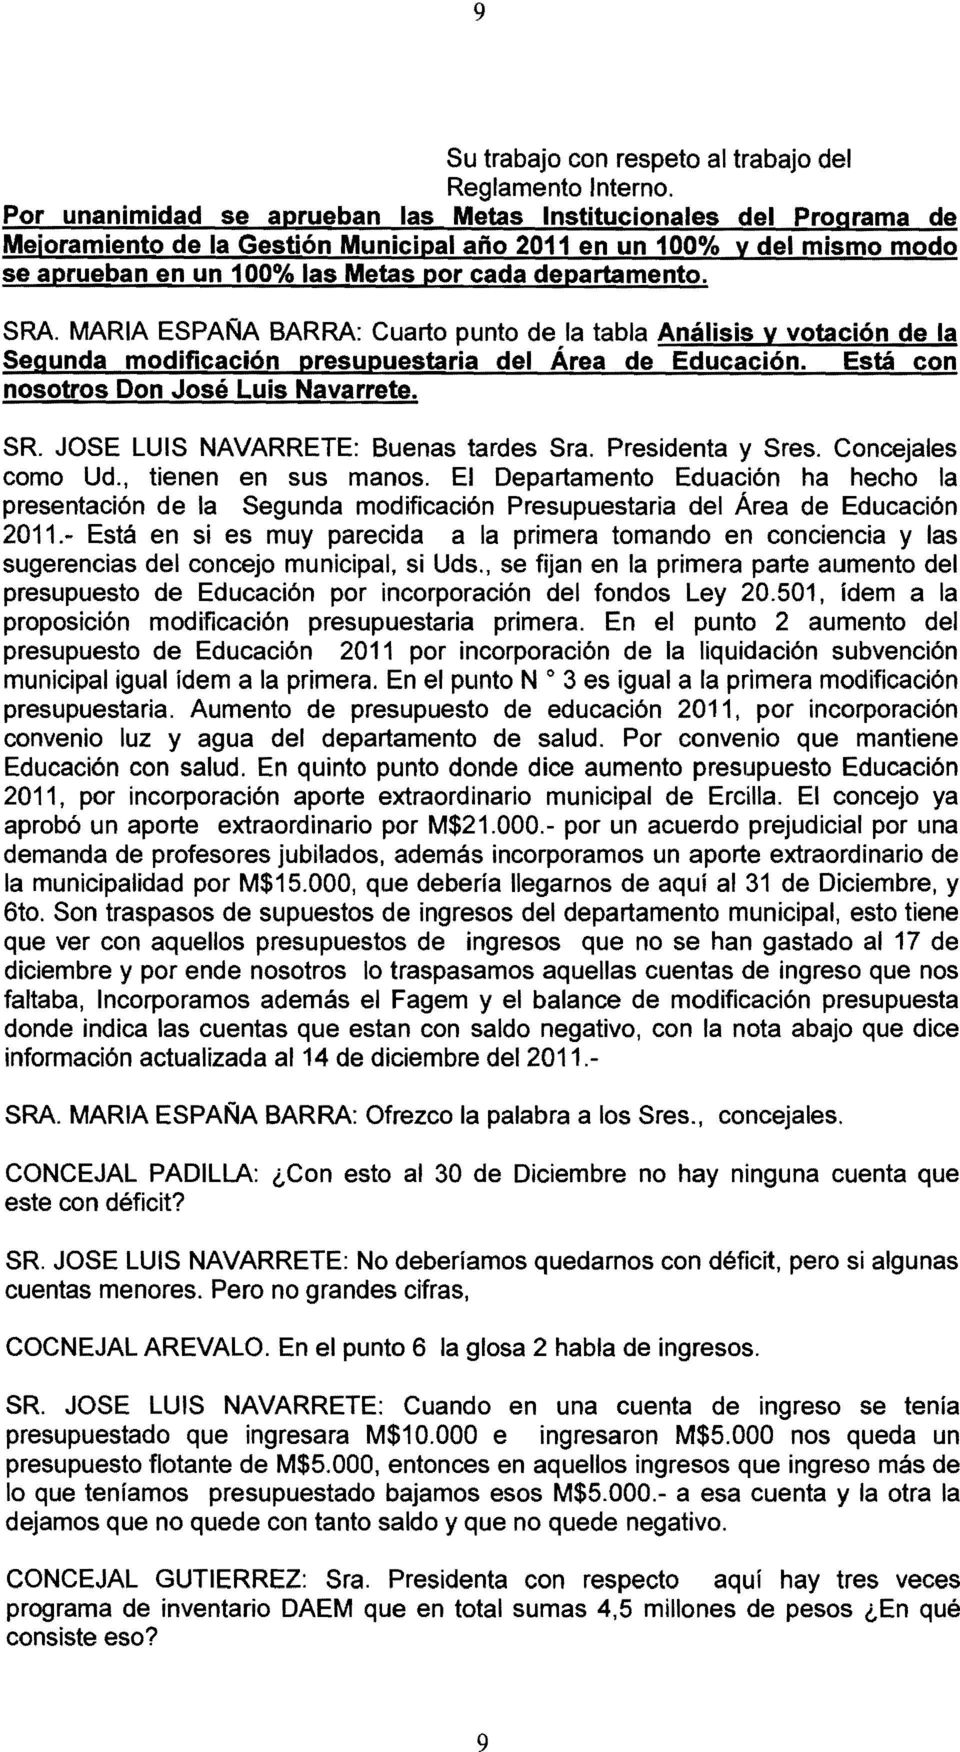 SRA MARIA ESPAr'JA BARRA: Cuarto punto de la tabla Análisis y votación de la Segunda modificación presupuestaria del Área de Educación. Está con nosotros Don José Luis Navarrete.